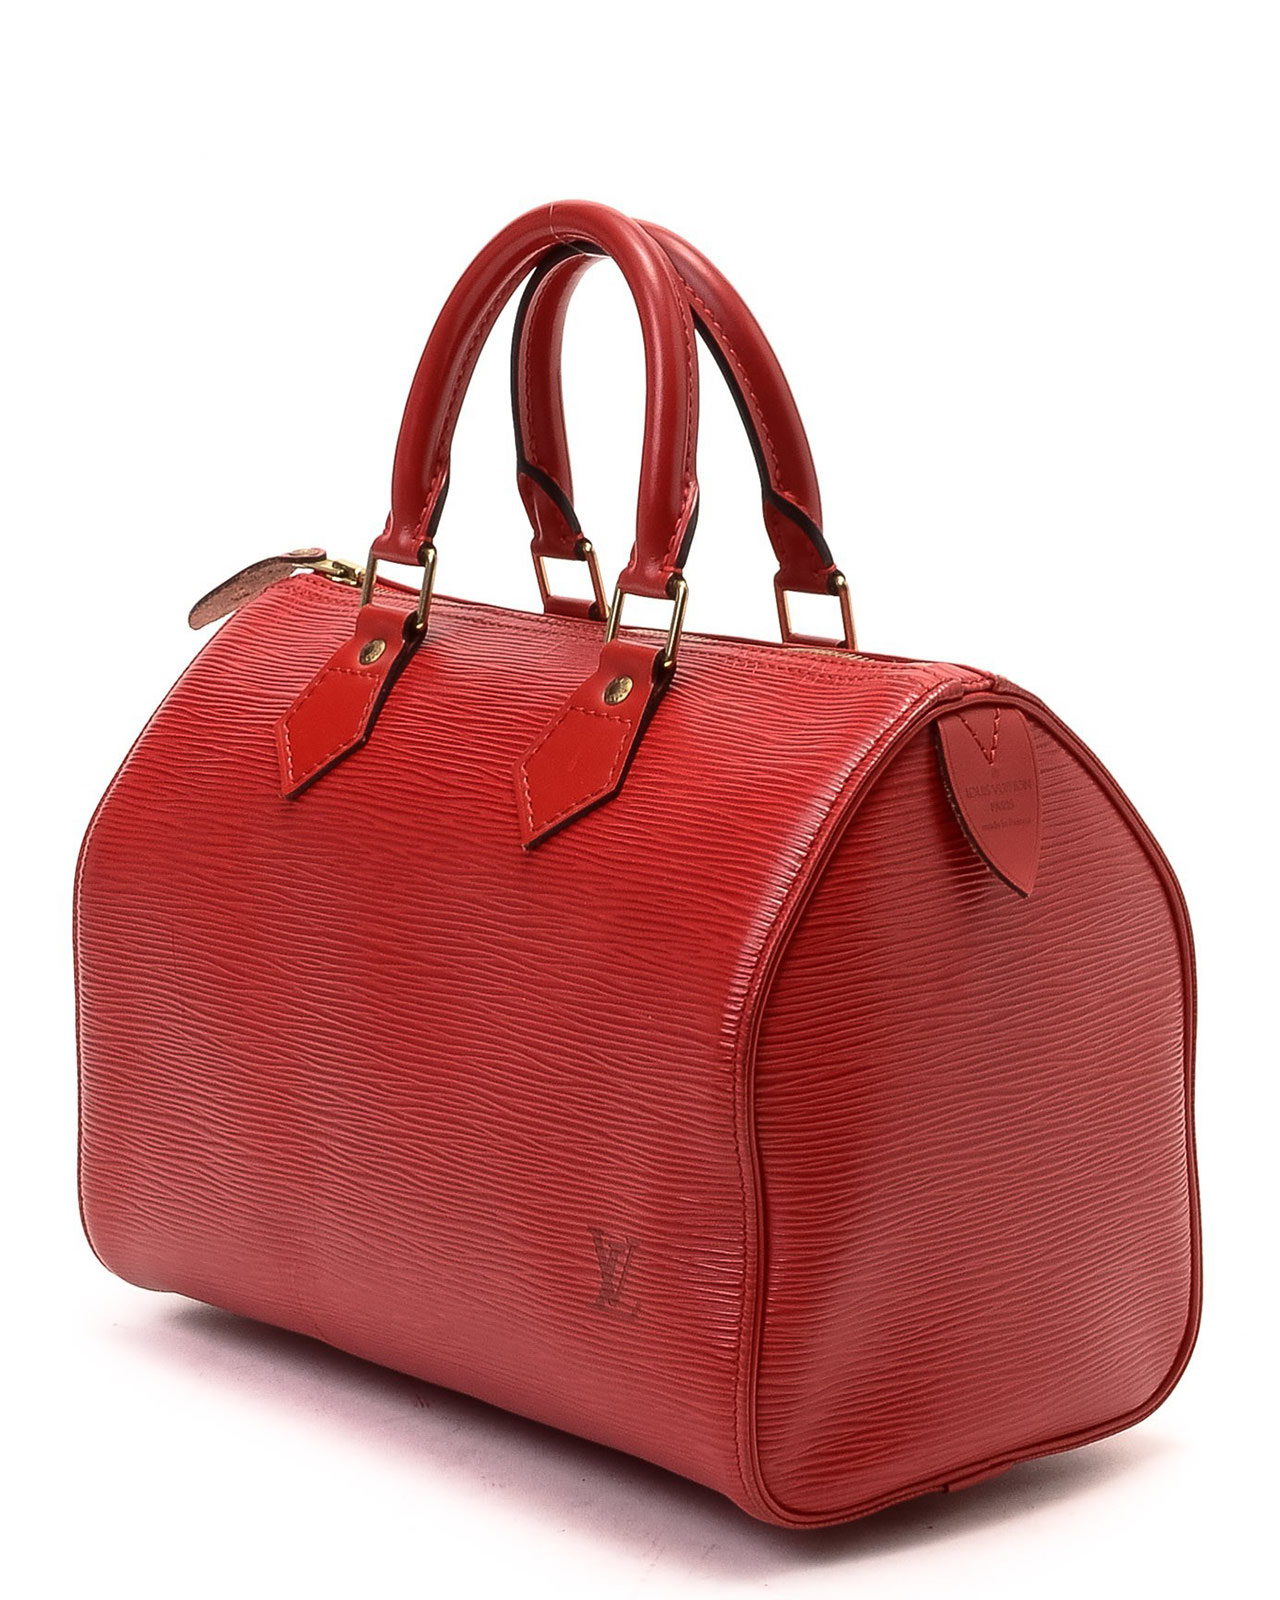 Lyst - Louis Vuitton Red Speedy 25 Handbag in Red